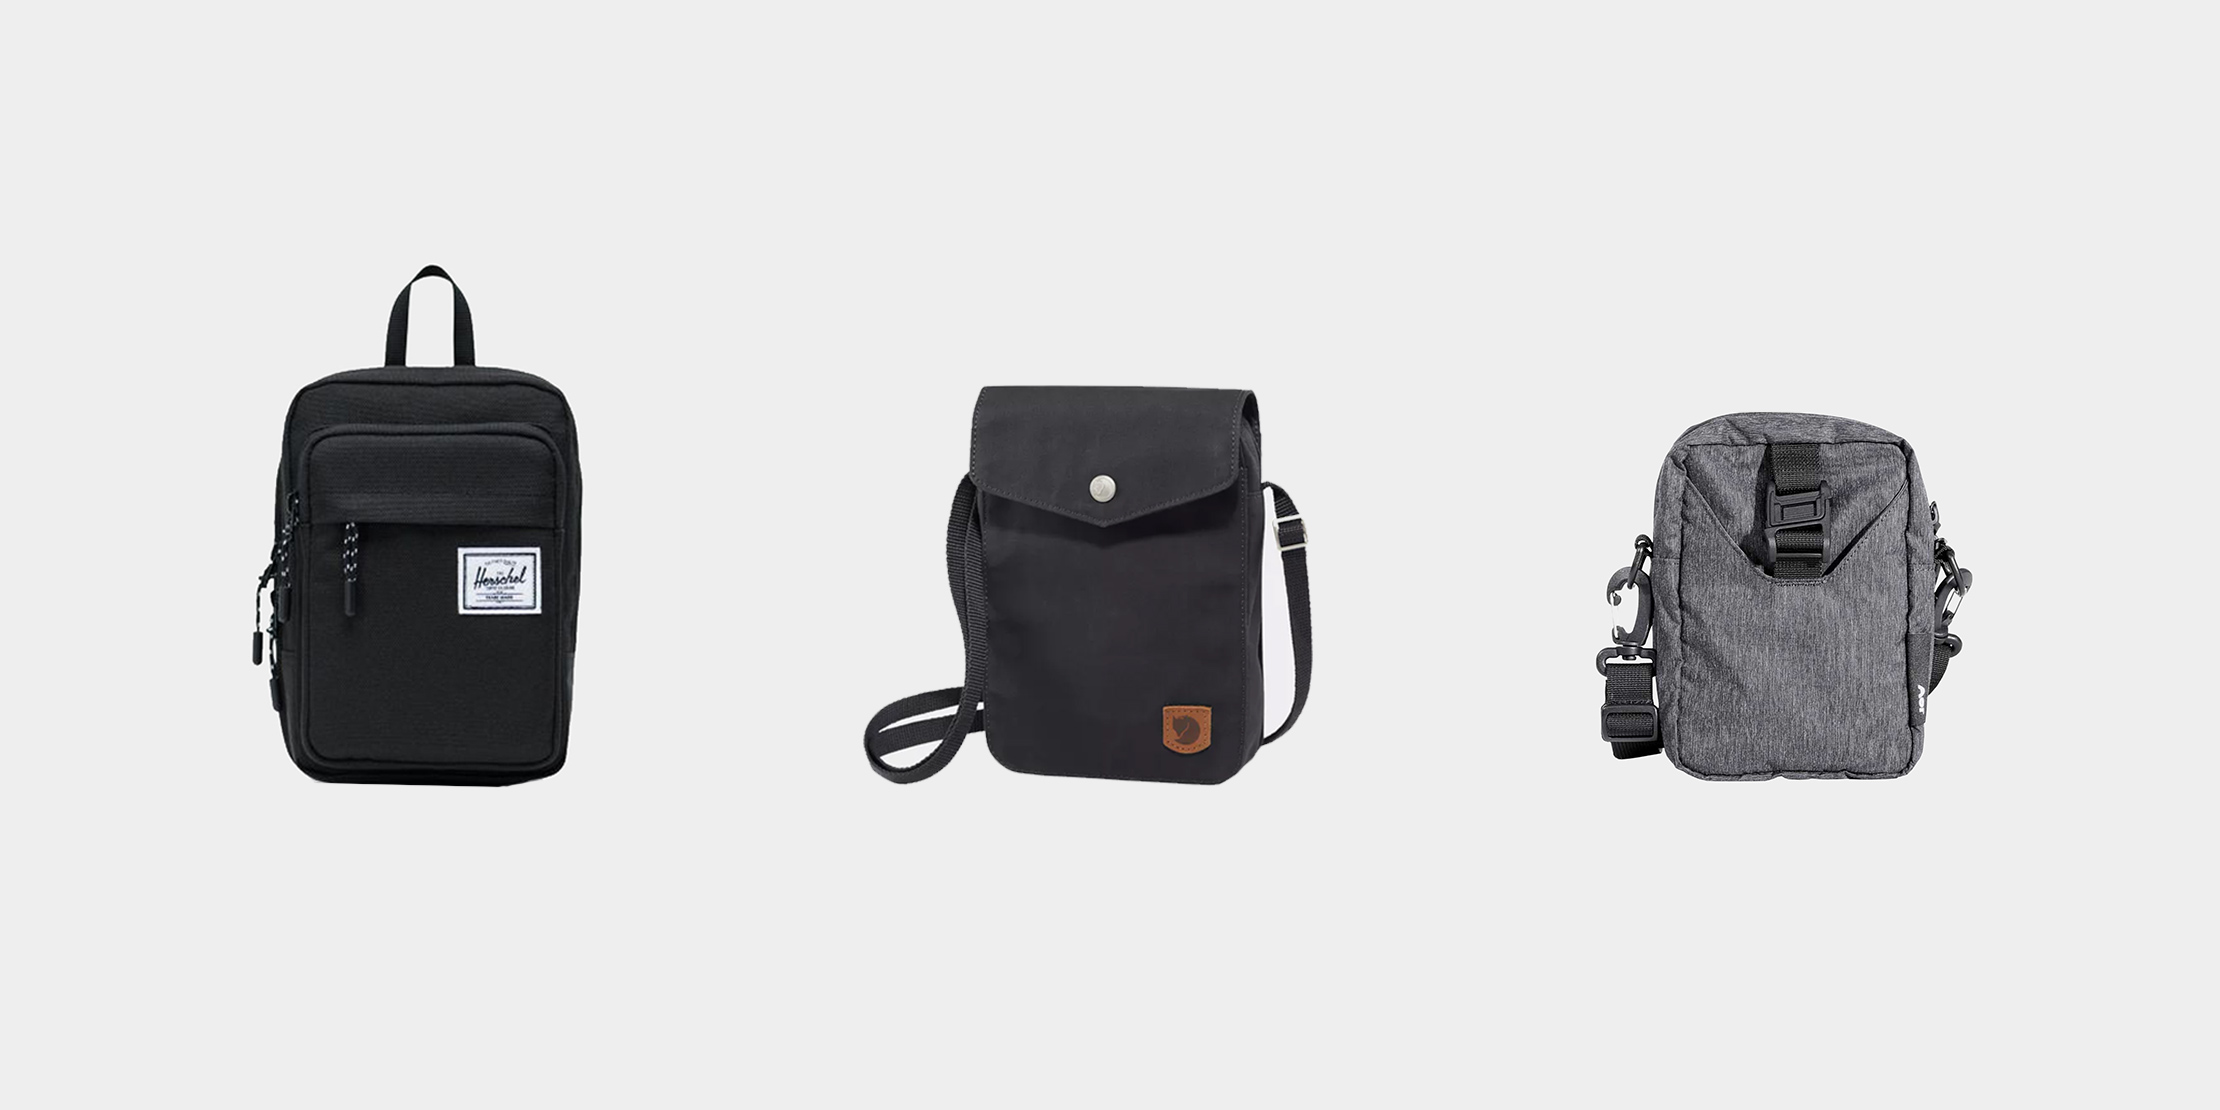 Crossbody Bag Bags & Purses Backpacks Leather Sling Bag Backpack Women and men Shoulder Bag Sling Bag 